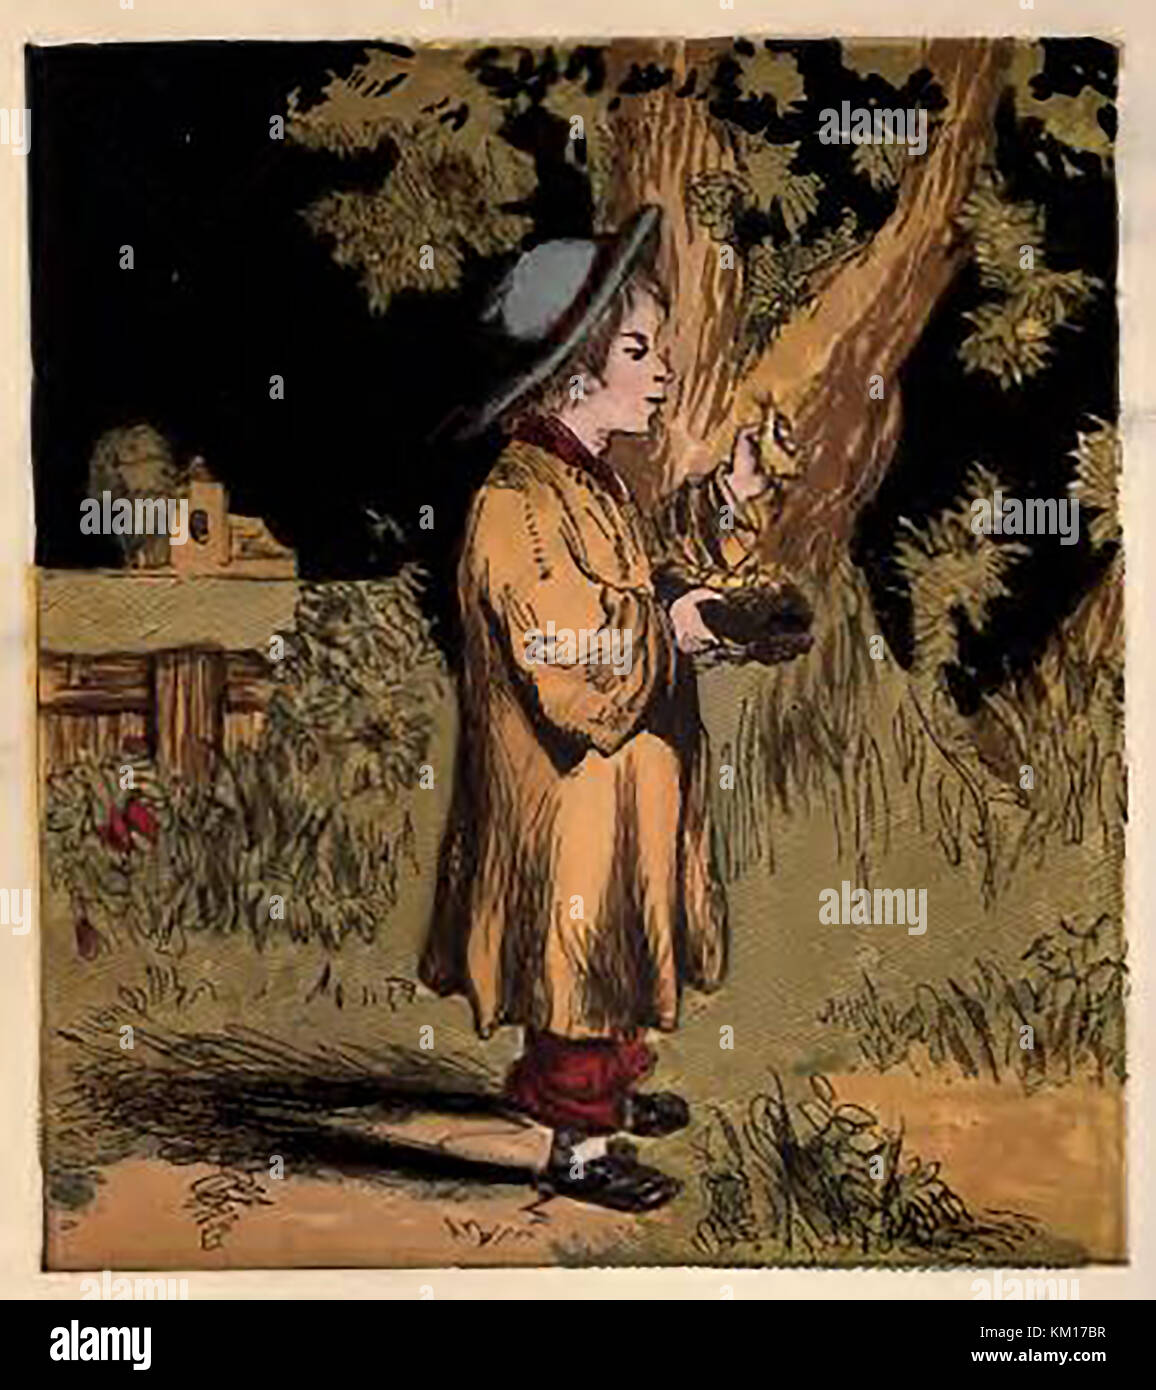 Une illustration couleur victorienne montrant un garçon 'la nidification des oiseaux' la collecte des œufs des oiseaux Banque D'Images